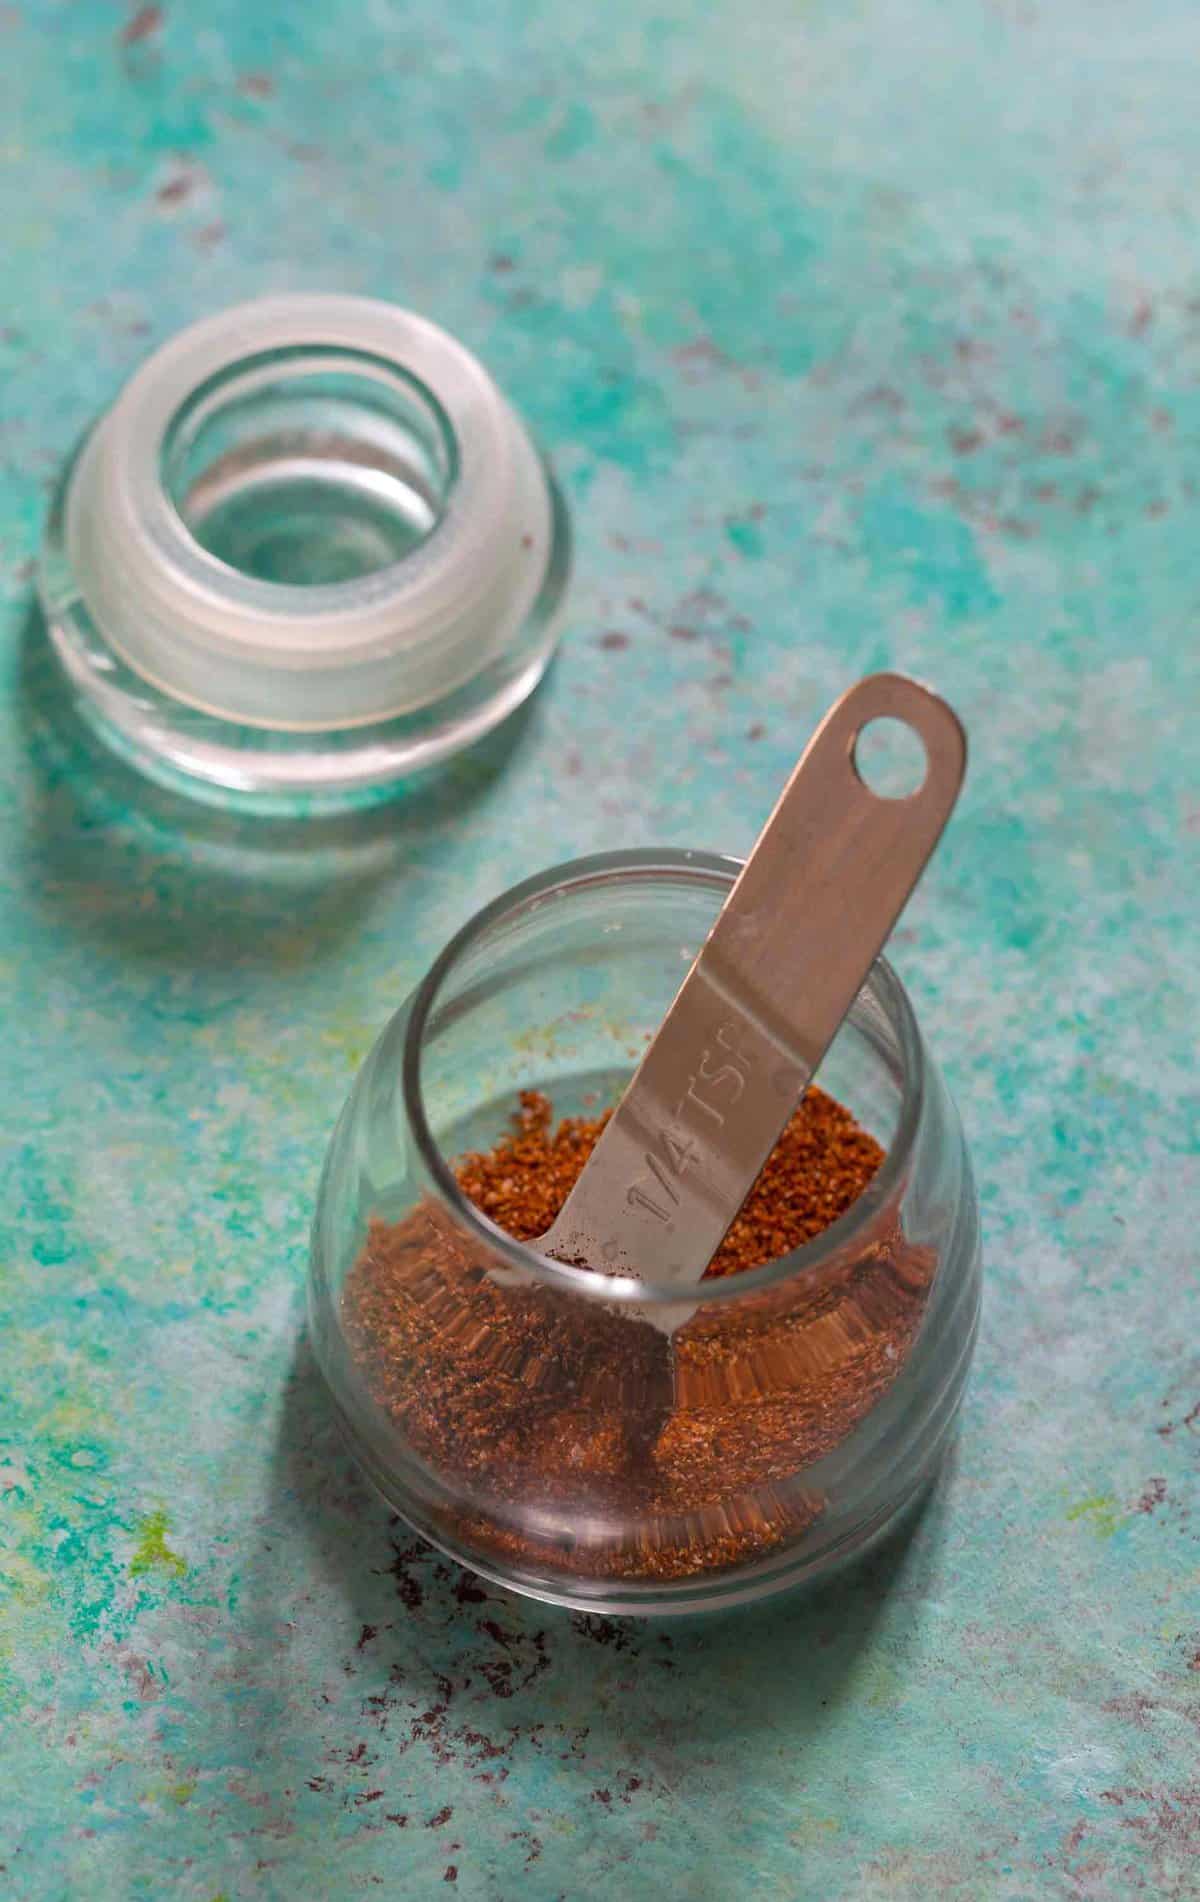 Spoon inside glass jar of fajita seasoning